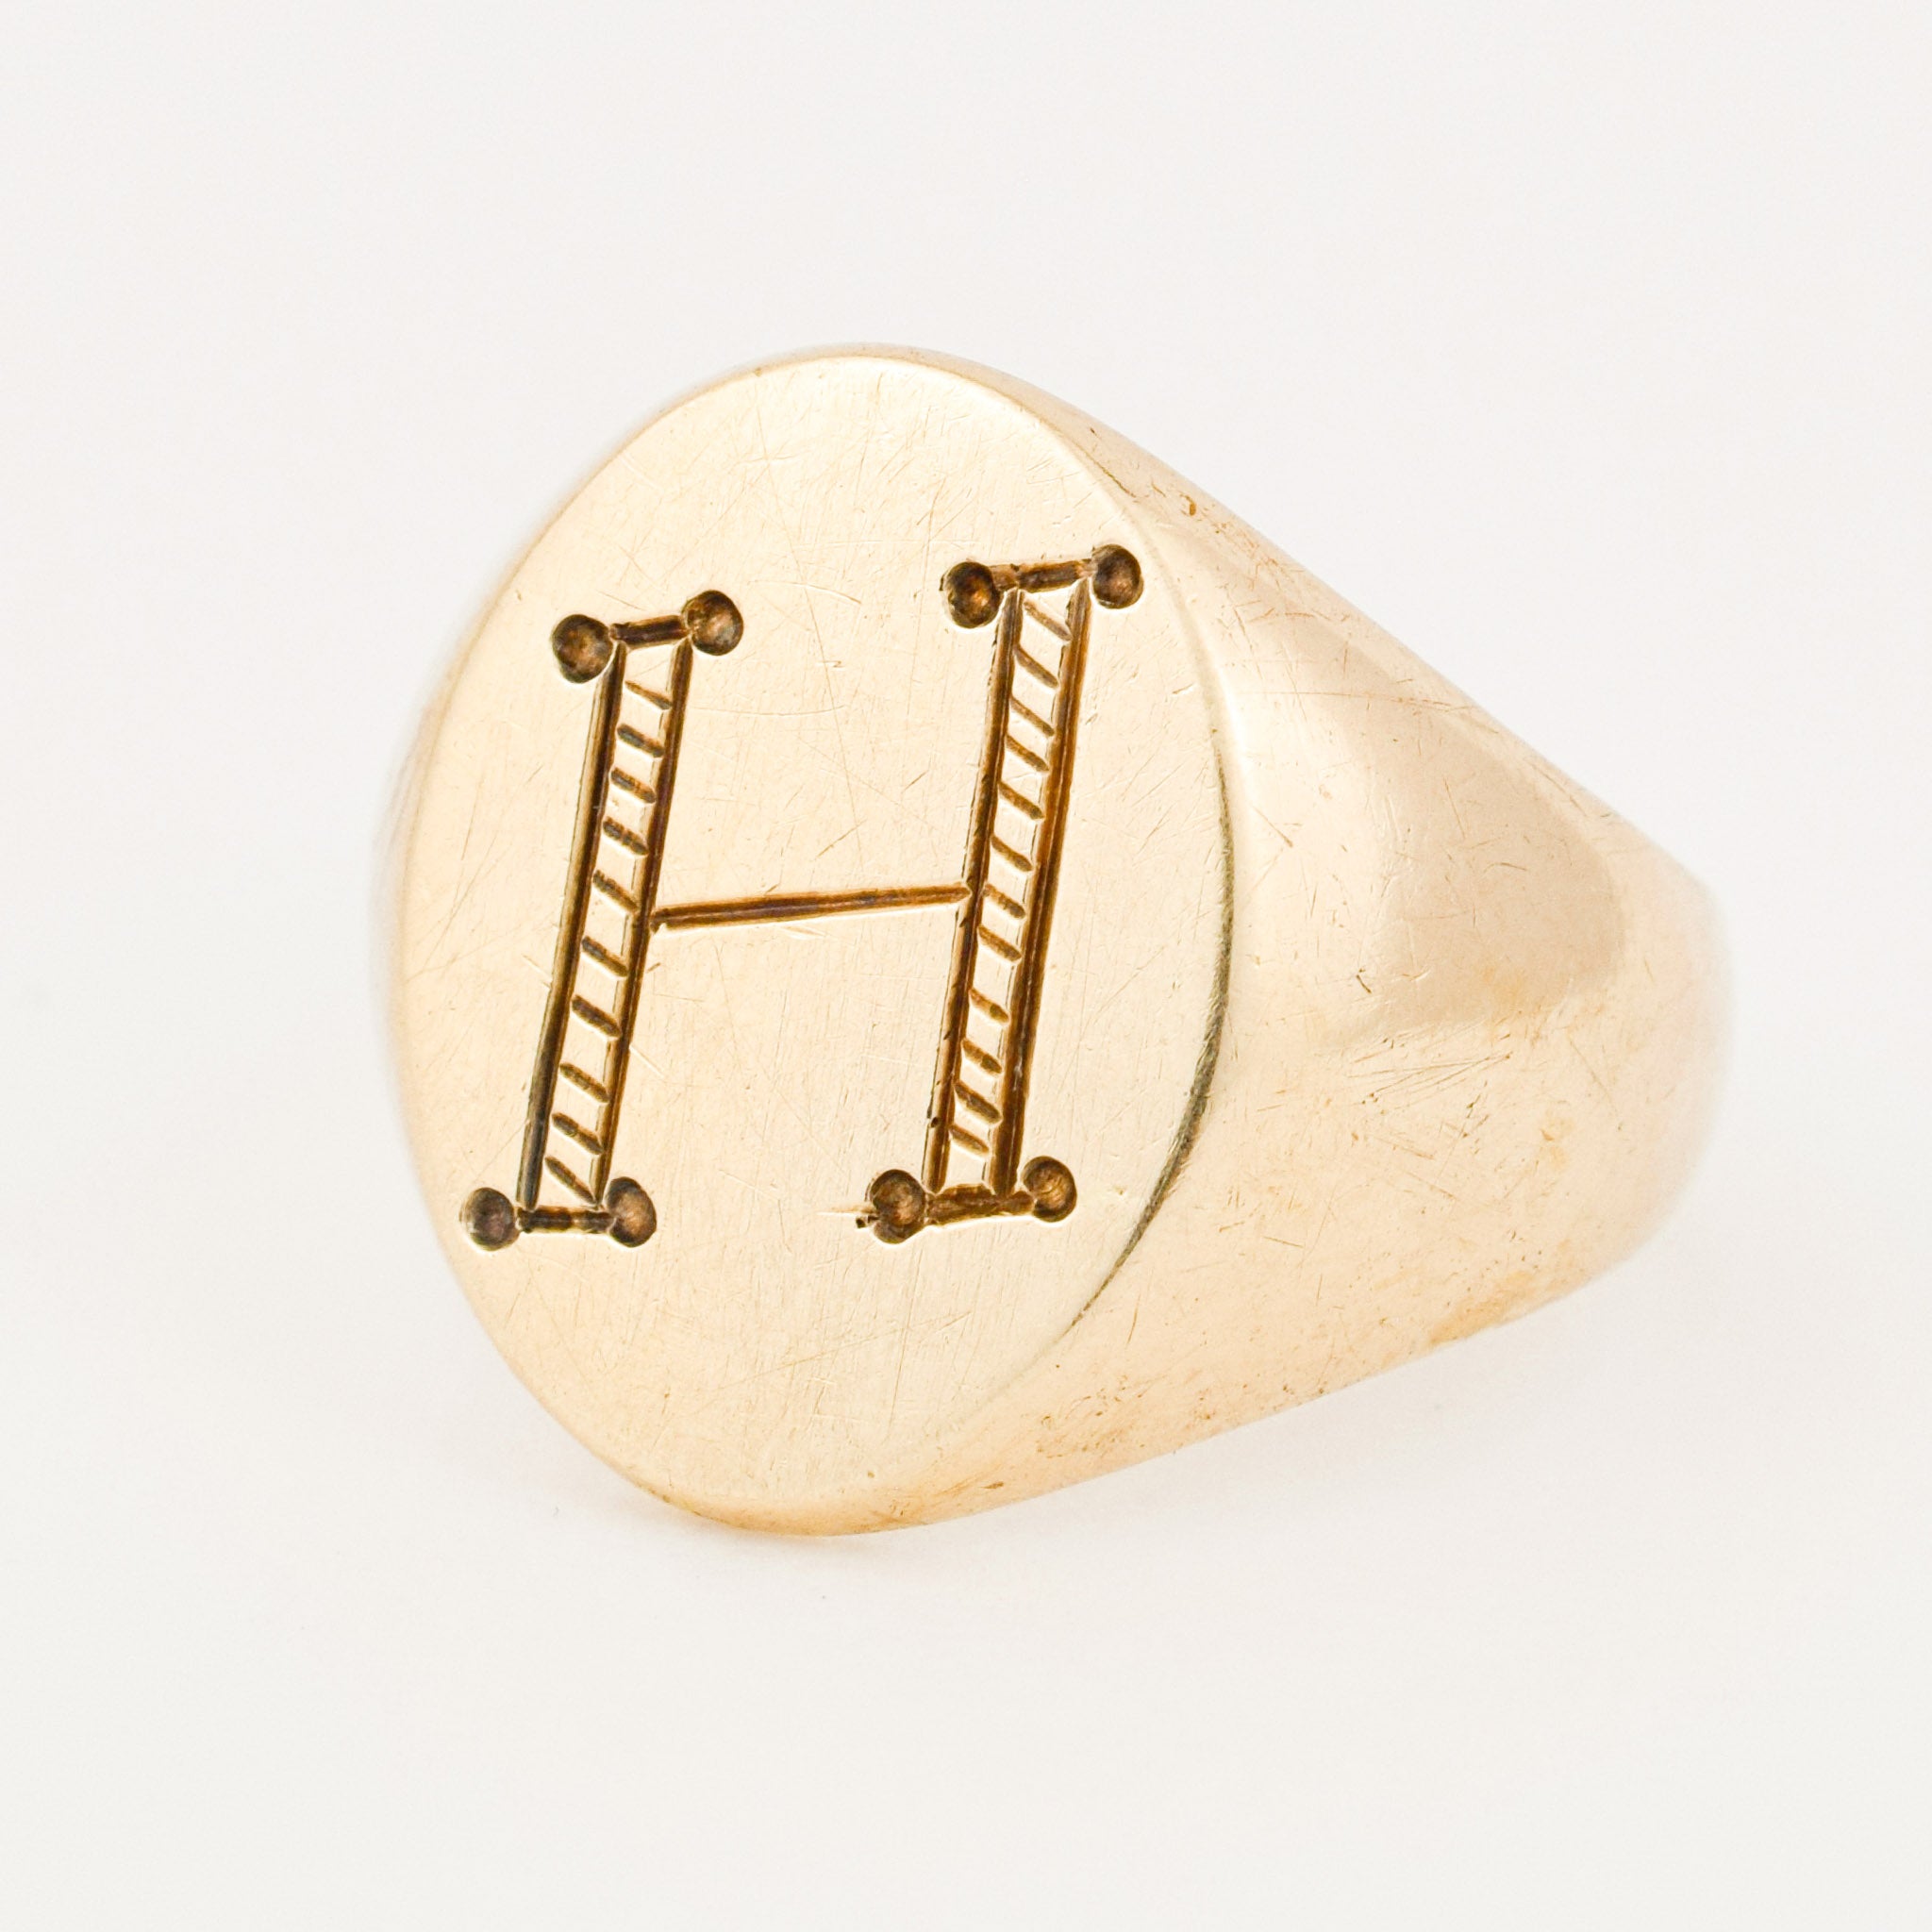 vintage gold 'h' signet ring